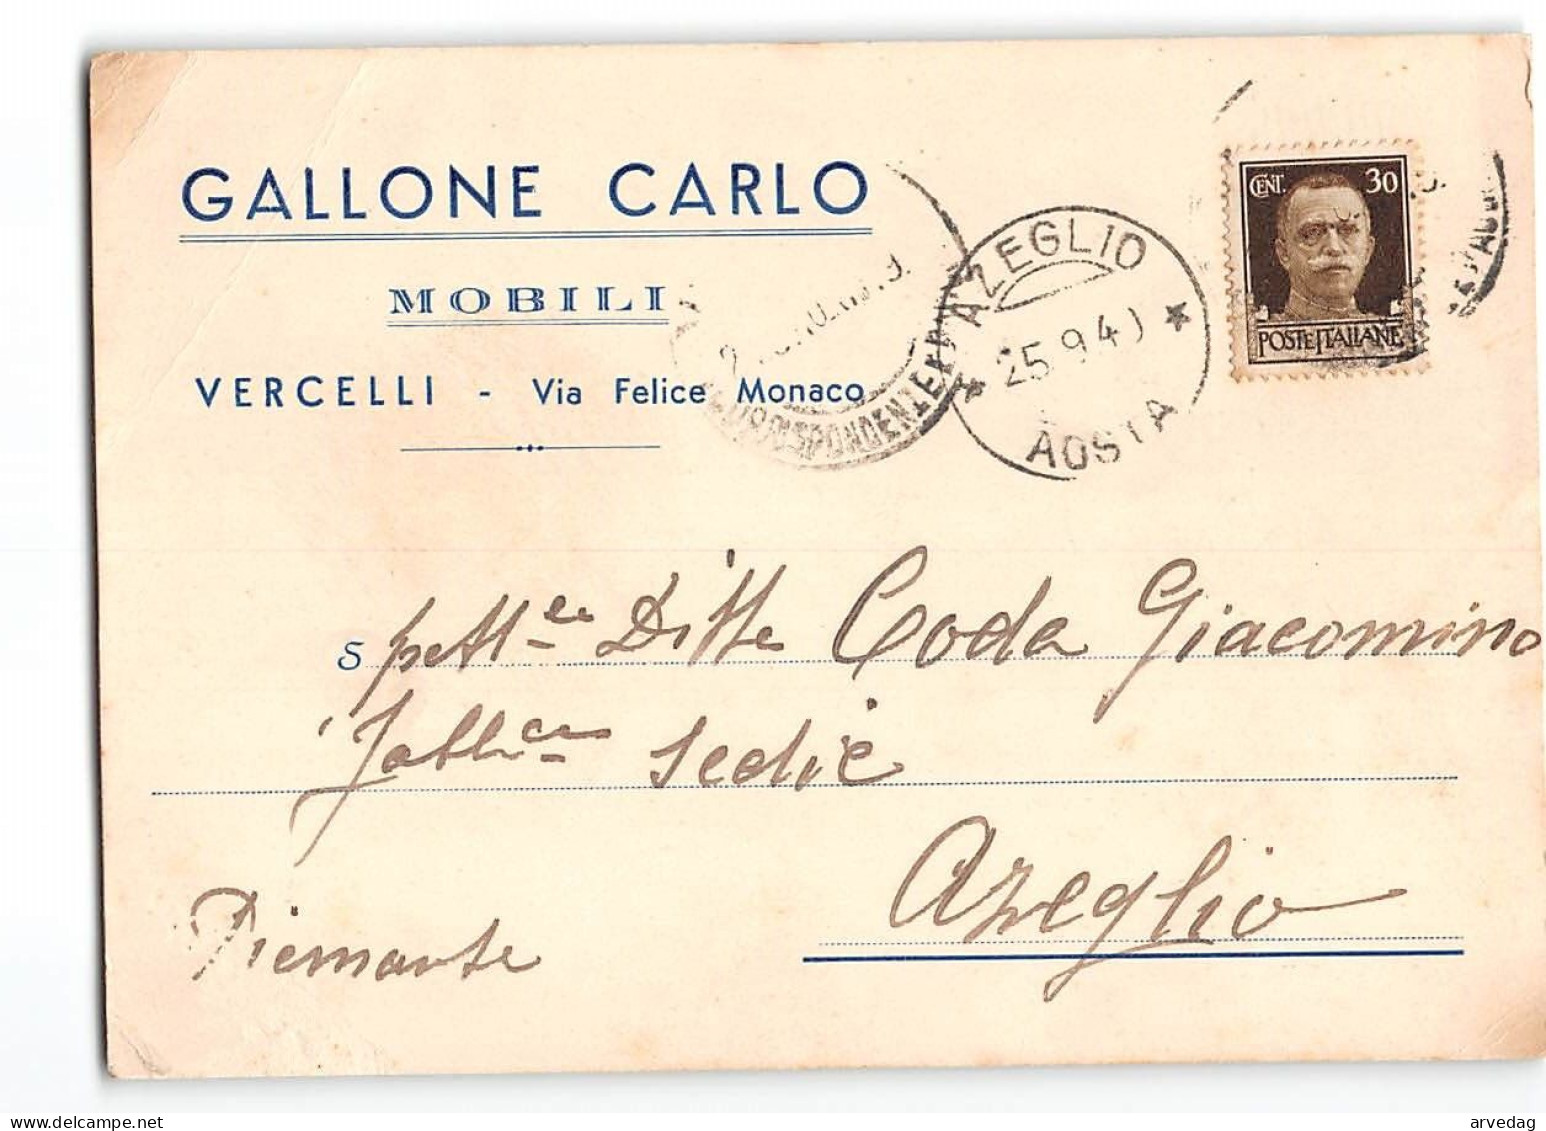 AG2577 GALLONE CARLO MOBILI VERCELLI X AZEGLIO - Marcofilie